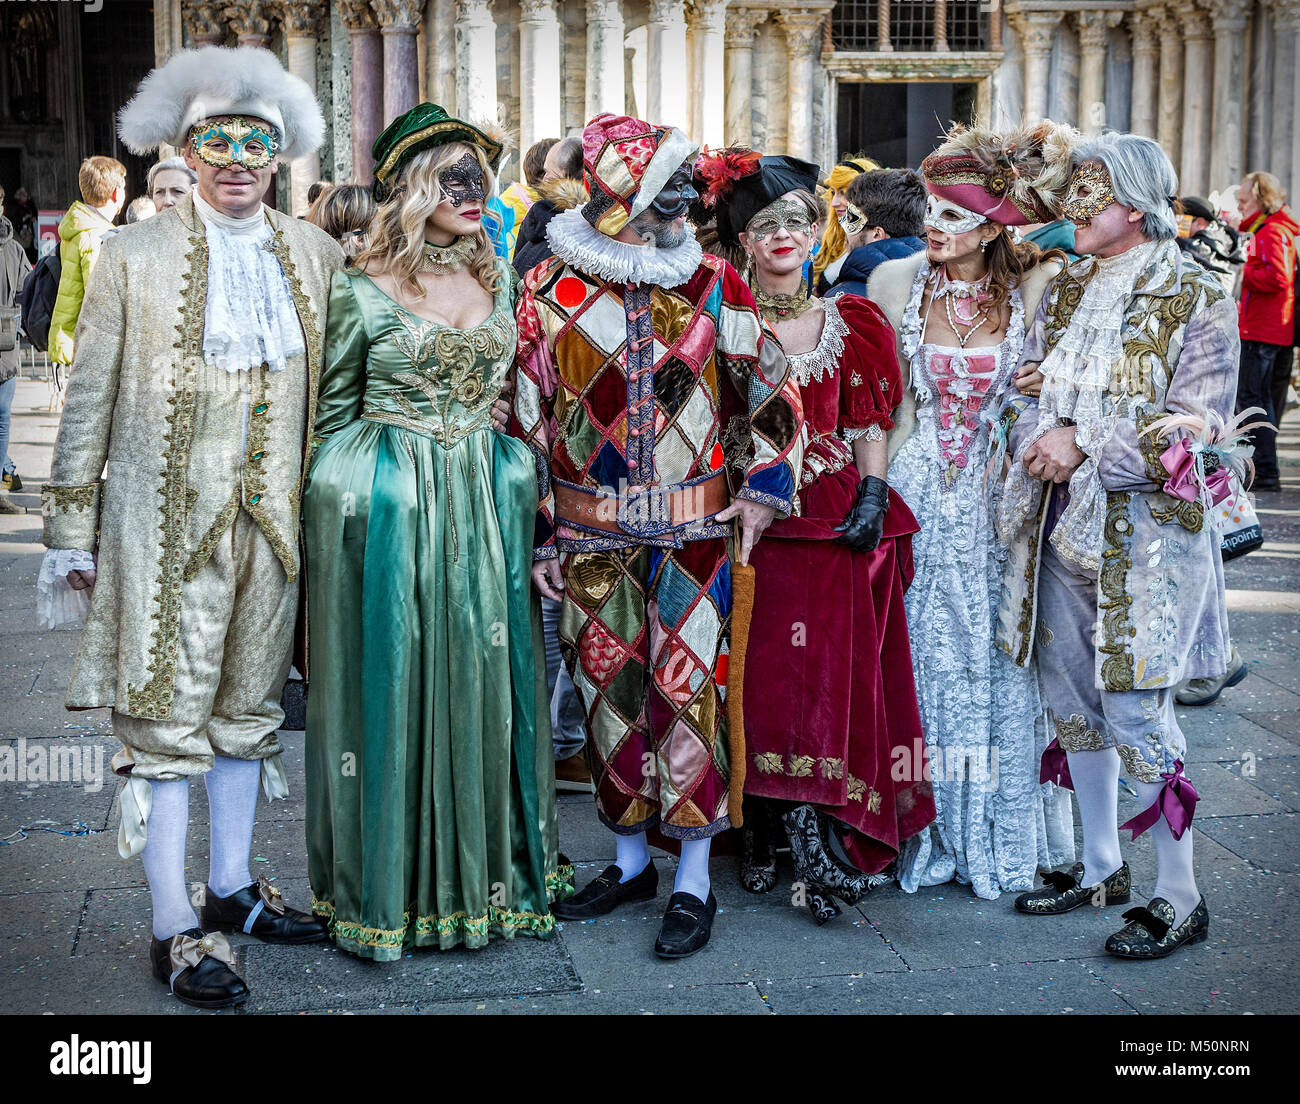 Gruppe von Nachtschwärmer in Tracht gekleidet am Karneval in Venedig Stockfoto